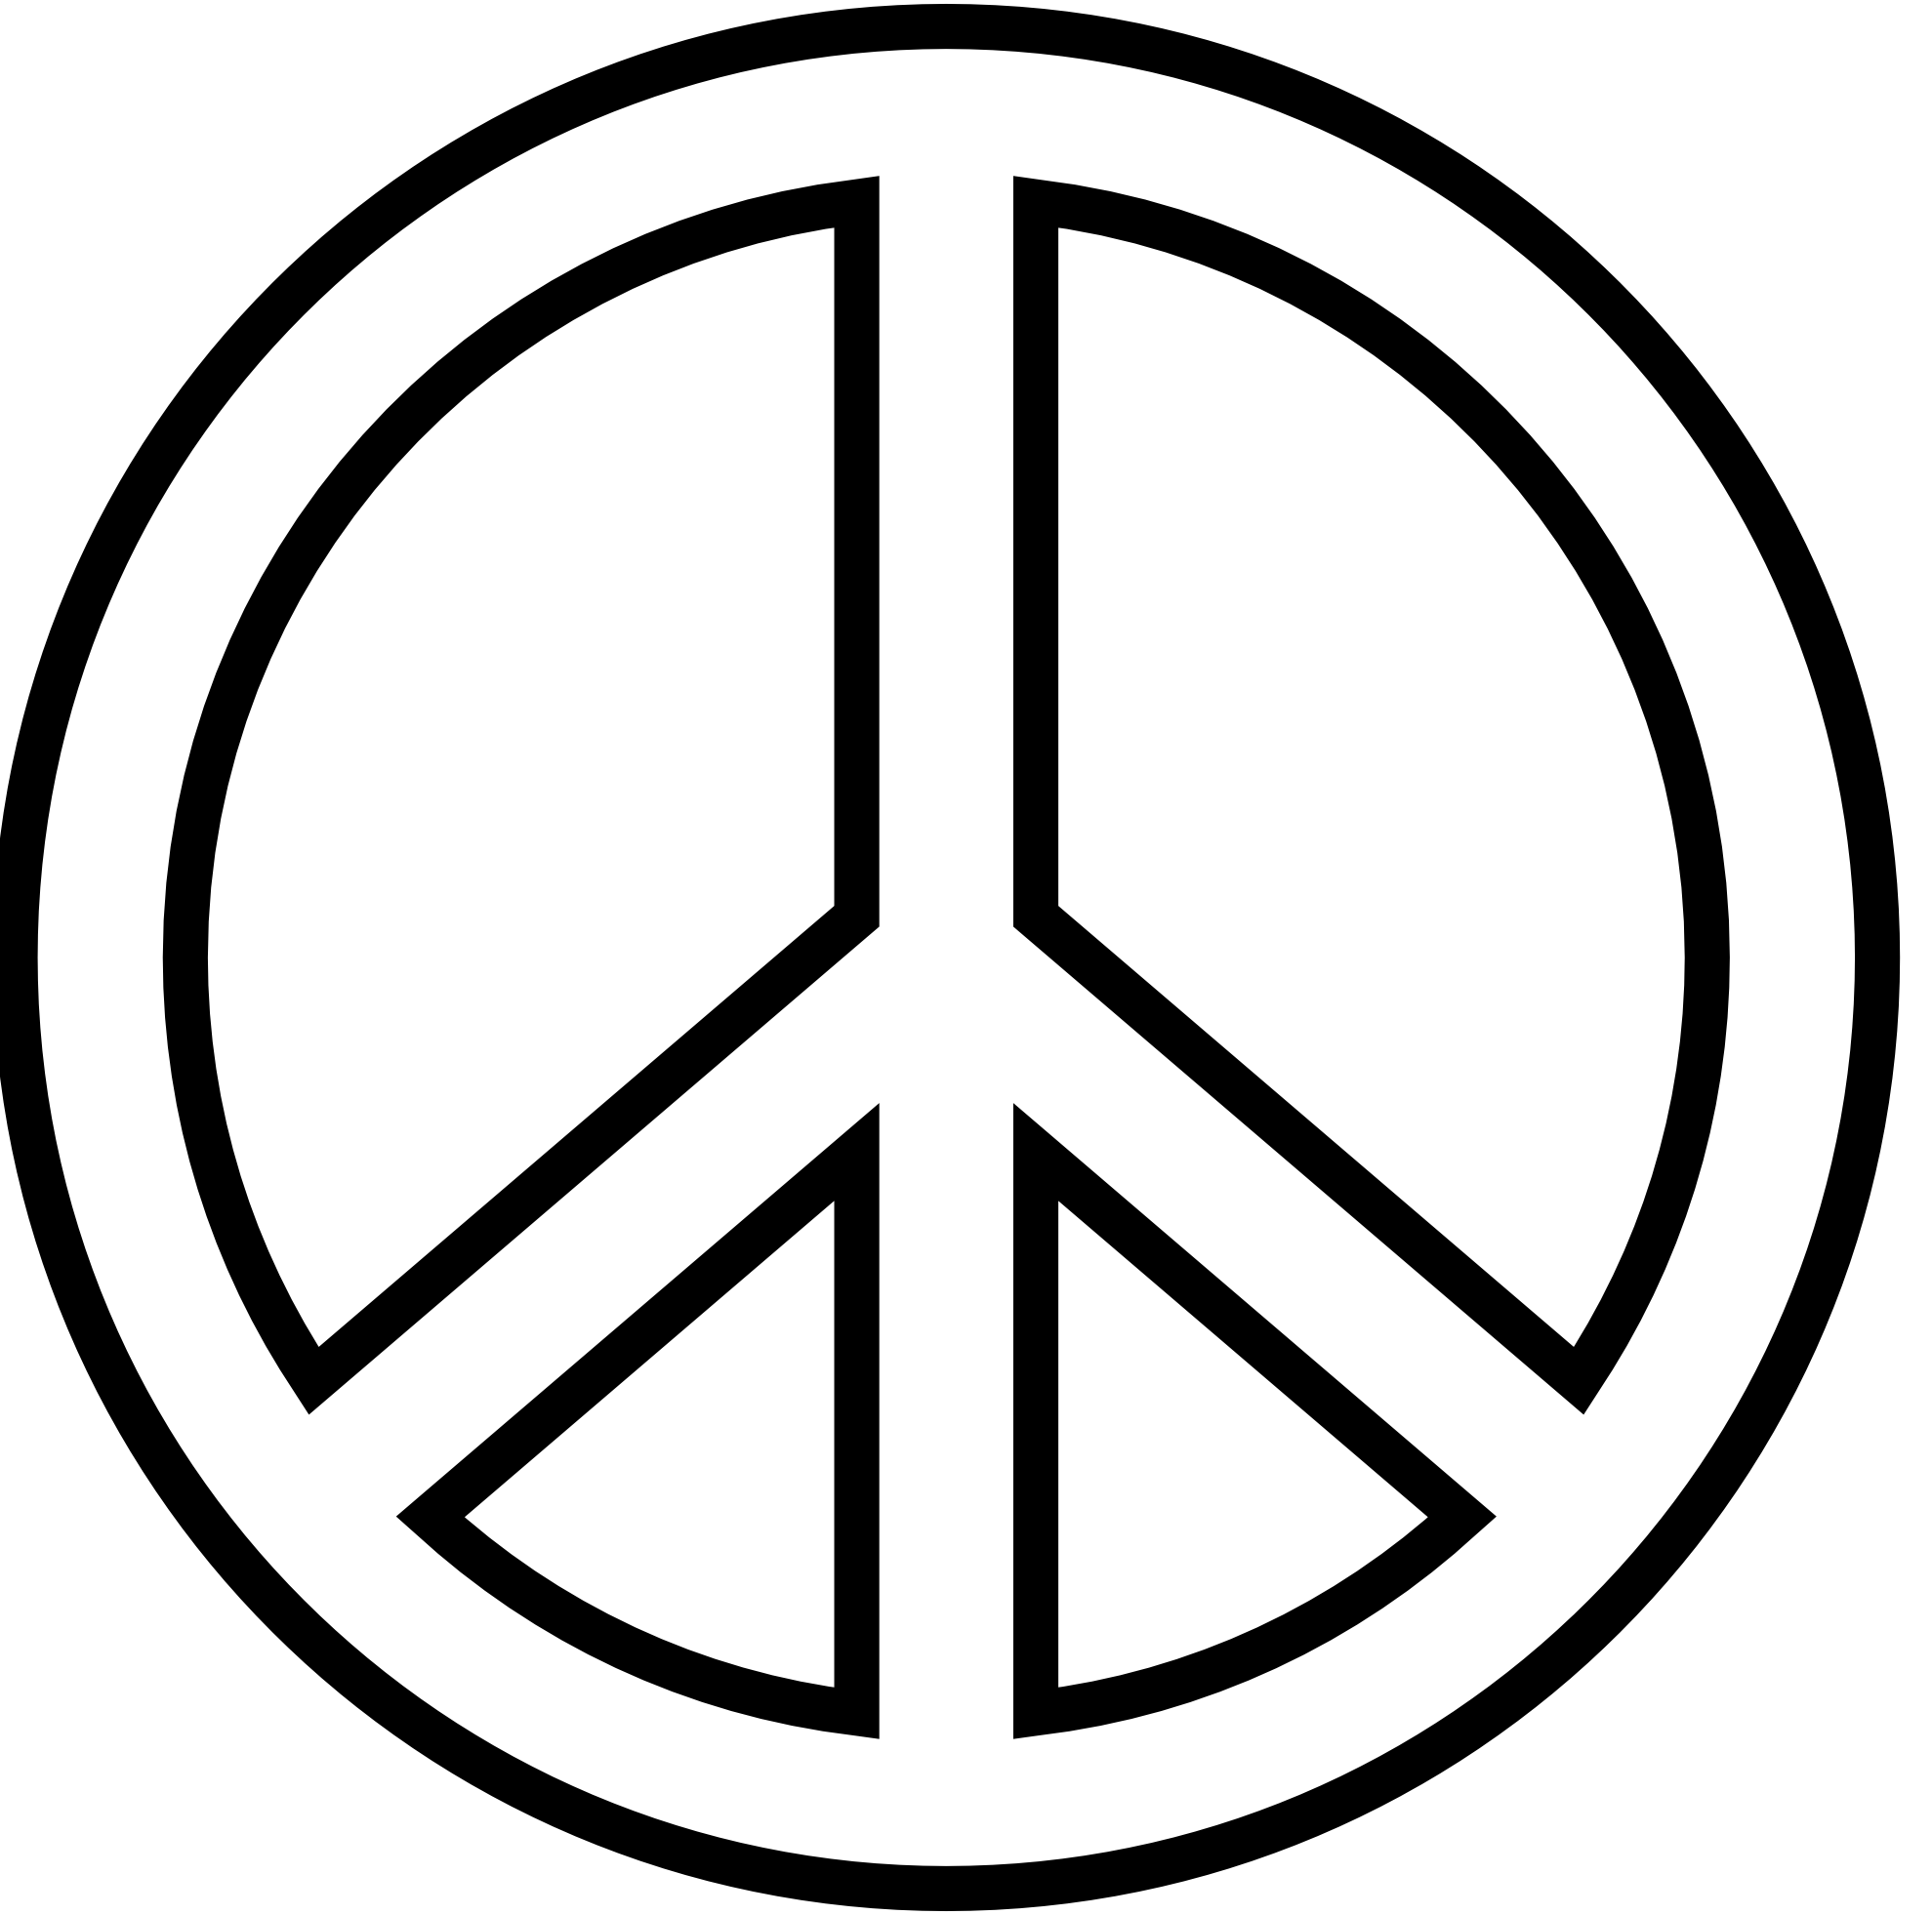 Friedenszeichen